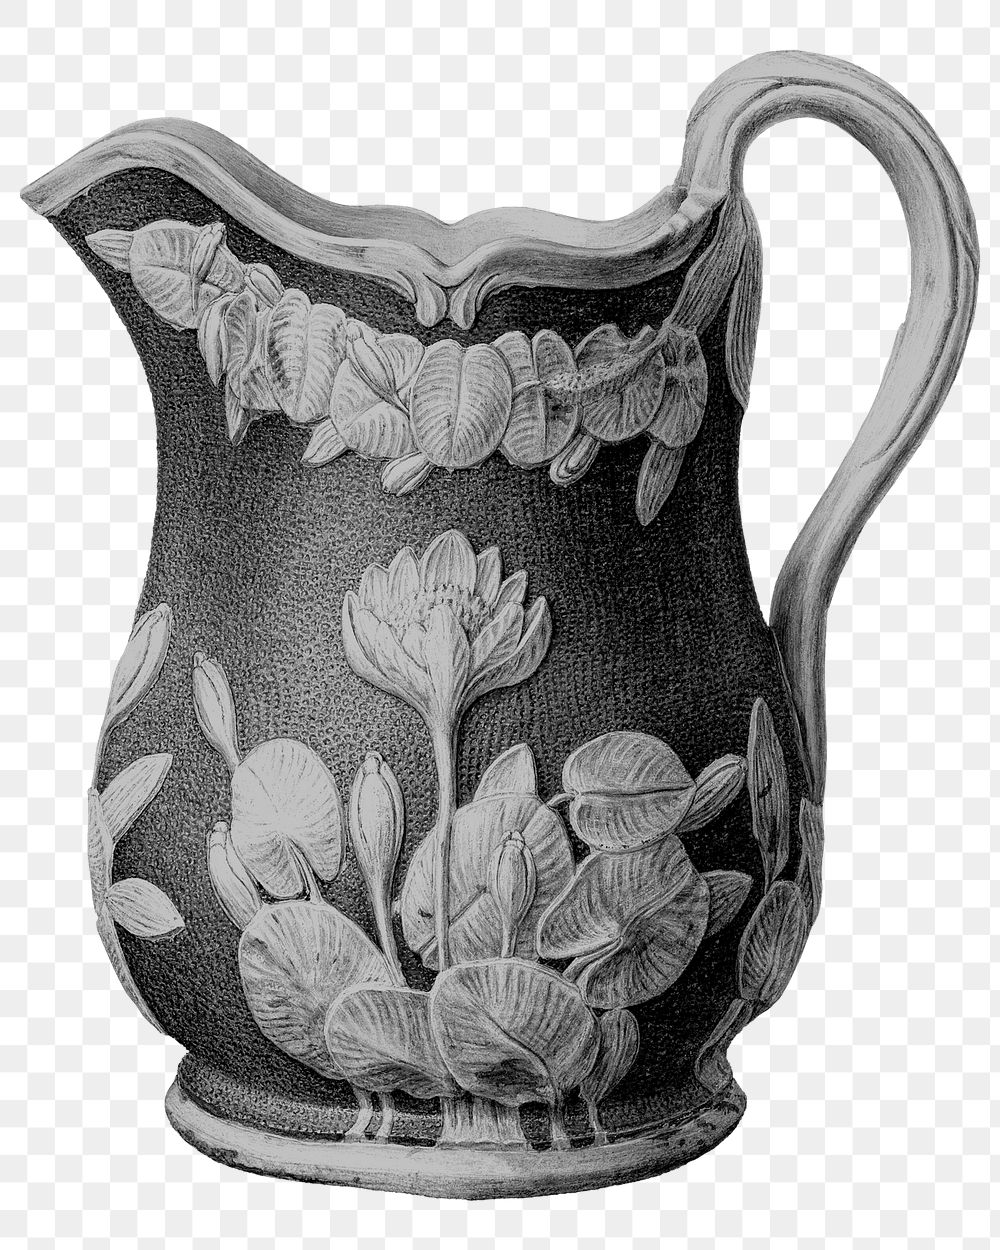 Floral water jug png sticker, vintage object illustration, transparent background